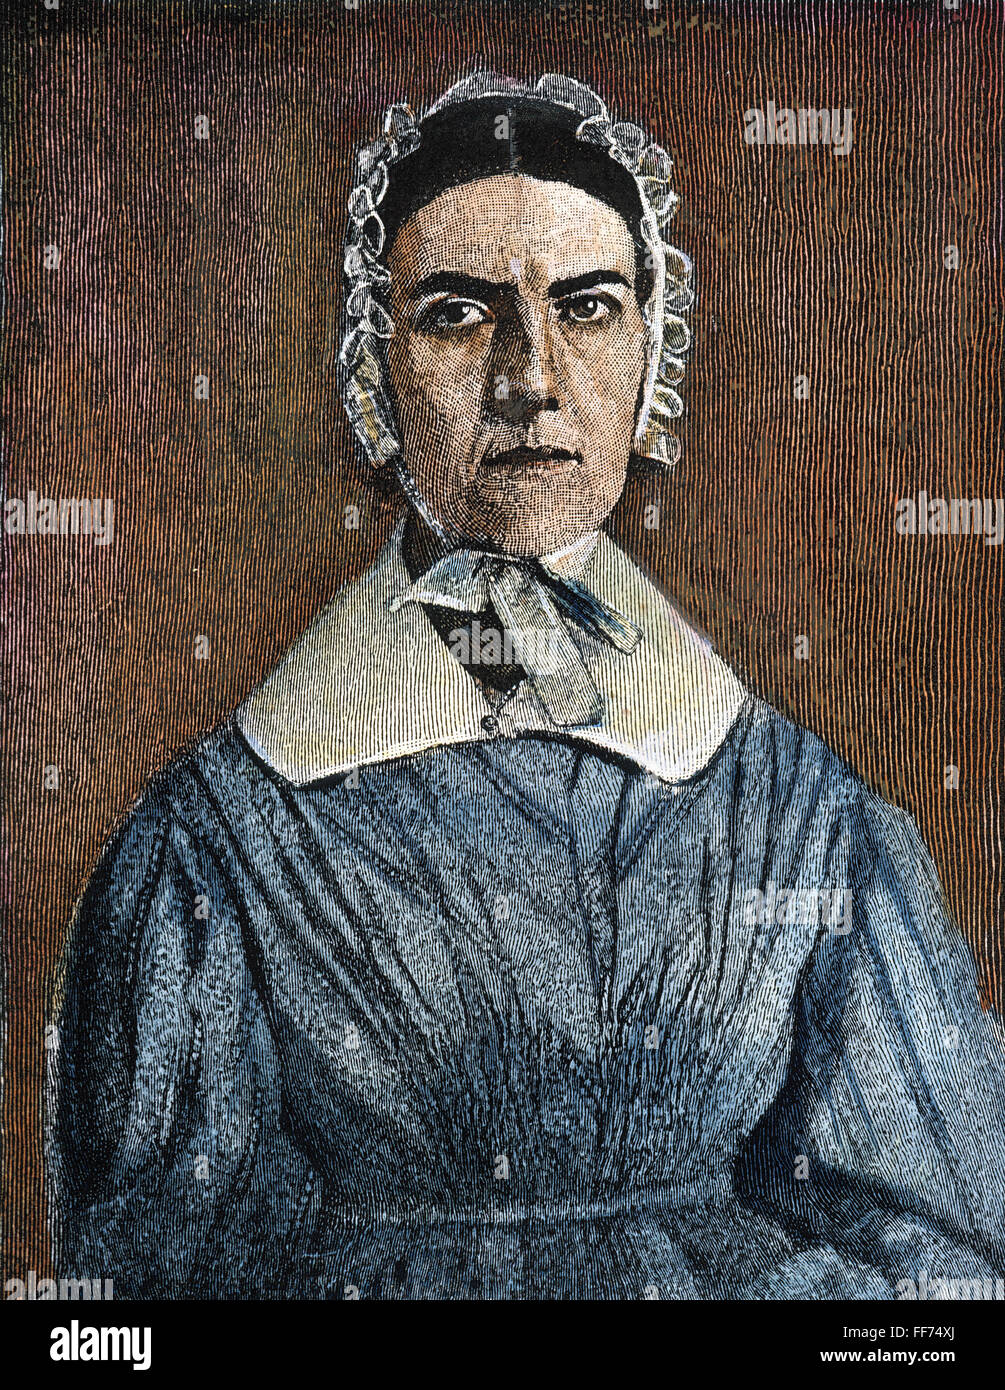 ANGELINA EMILY GRIMKE /n(1805-1879). American reformer e verità. Incisione del XIX secolo. Foto Stock